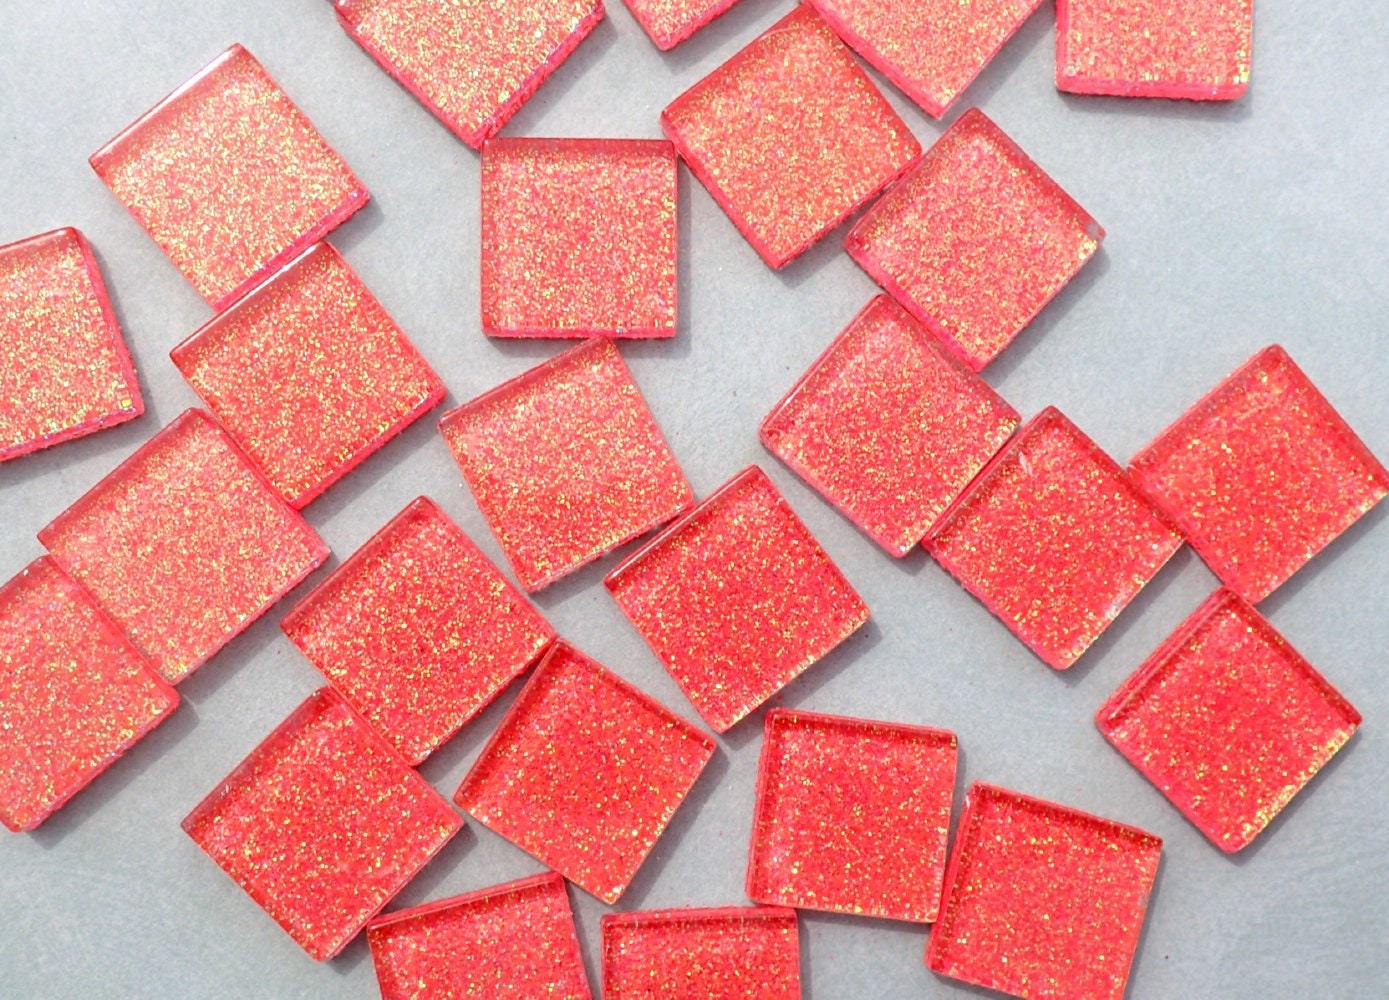 Bubblegum Pink Glitter Tiles - 20mm Mosaic Tiles - 25 Metallic Glass Tiles